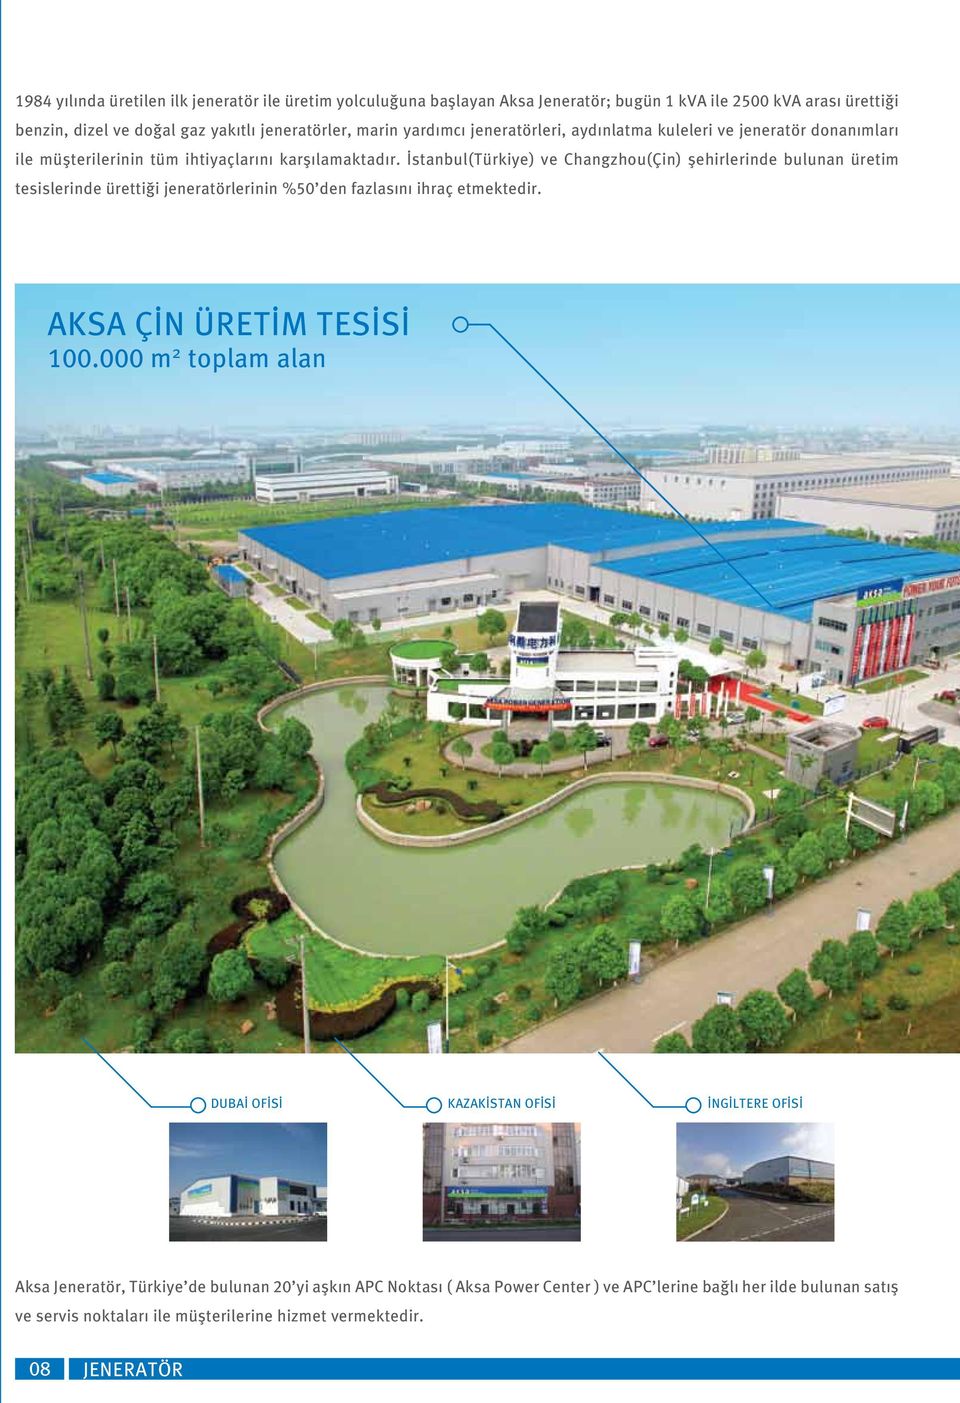 İstanbul(Türkiye) ve Changzhou(Çin) şehirlerinde bulunan üretim tesislerinde ürettiği jeneratörlerinin %50 den fazlas n ihraç etmektedir. AKSA ÇİN ÜRETİM TESİSİ 100.